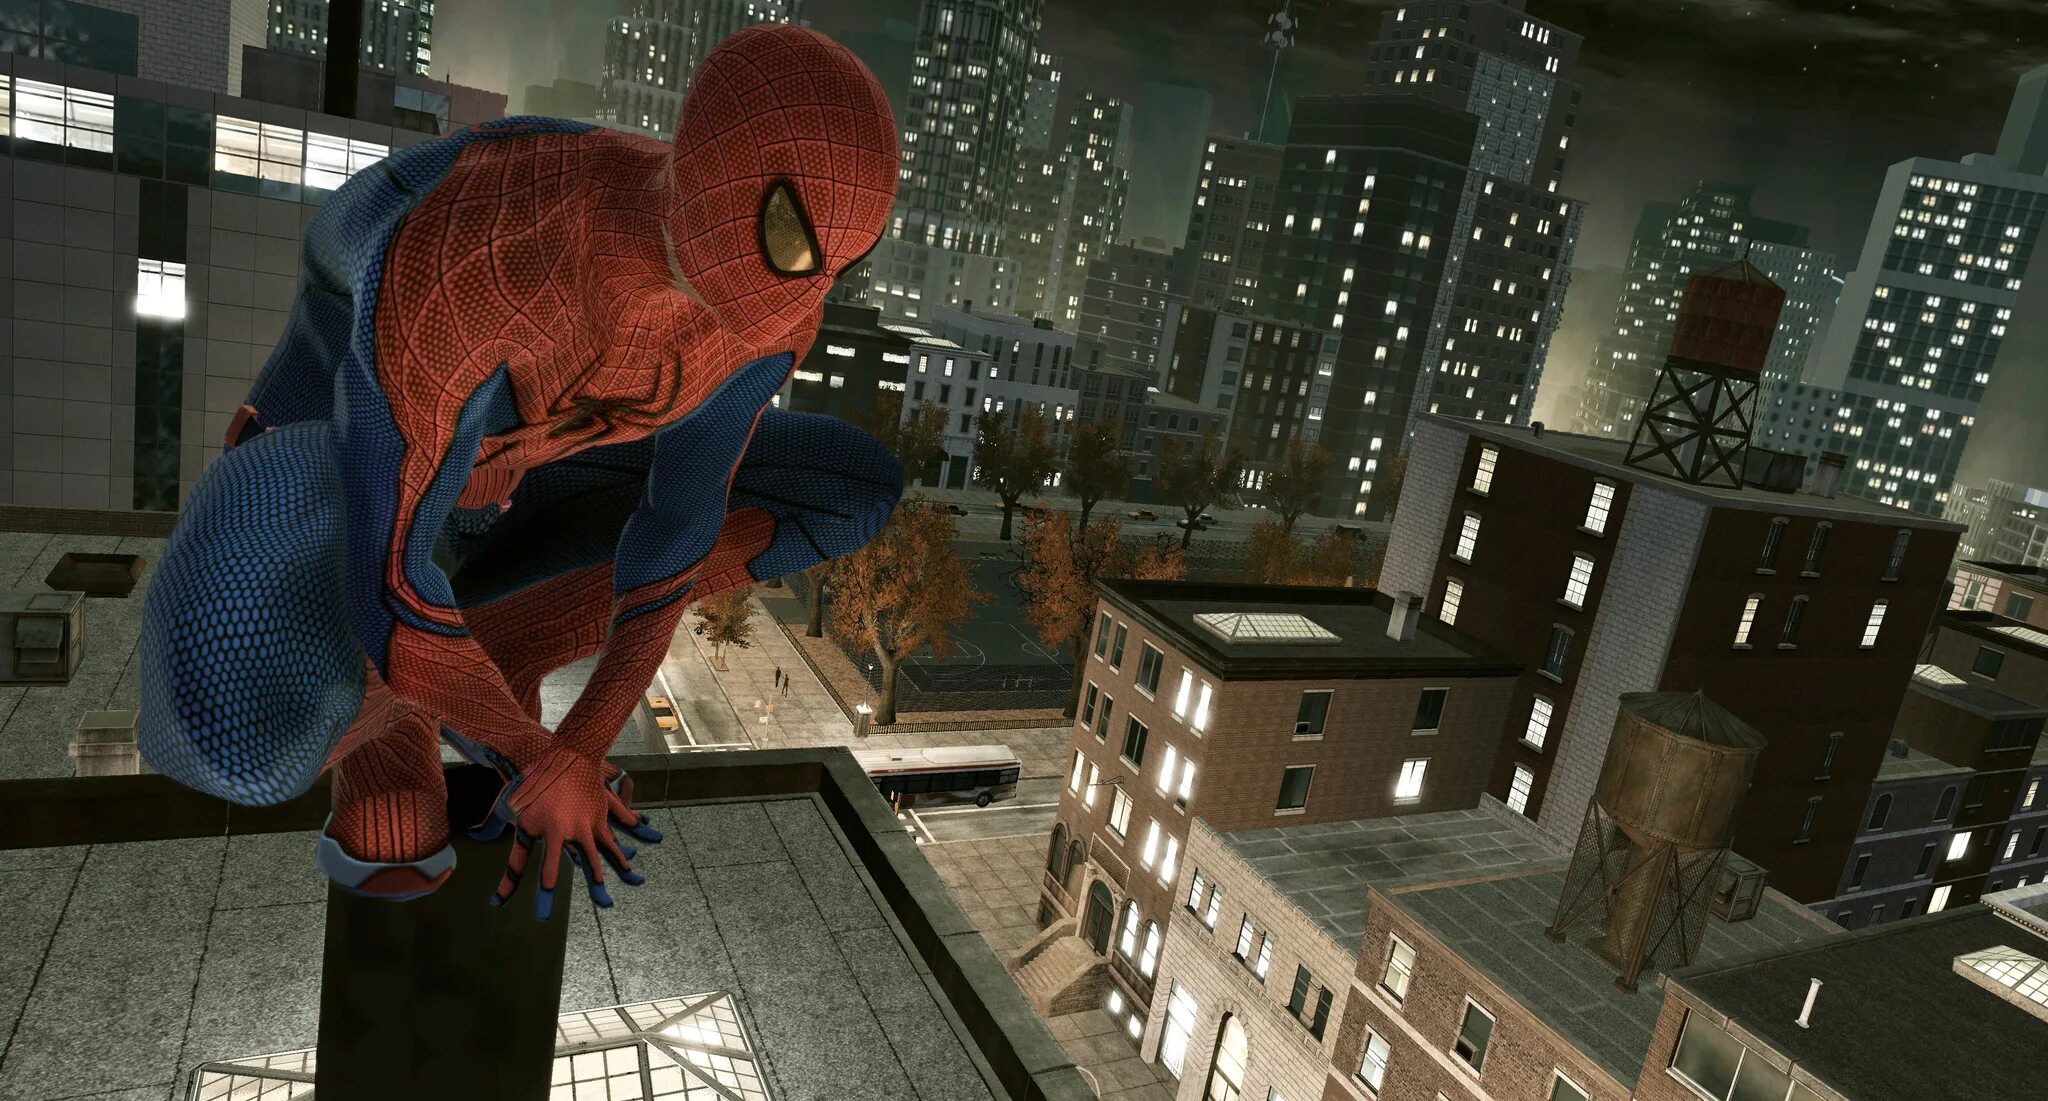 The amazing Spider-man (игра, 2012). The amazing Spider-man 2 игра. Человек паук амазинг игра. Человек паук эмейзинг 2 игра. Зе спайдер